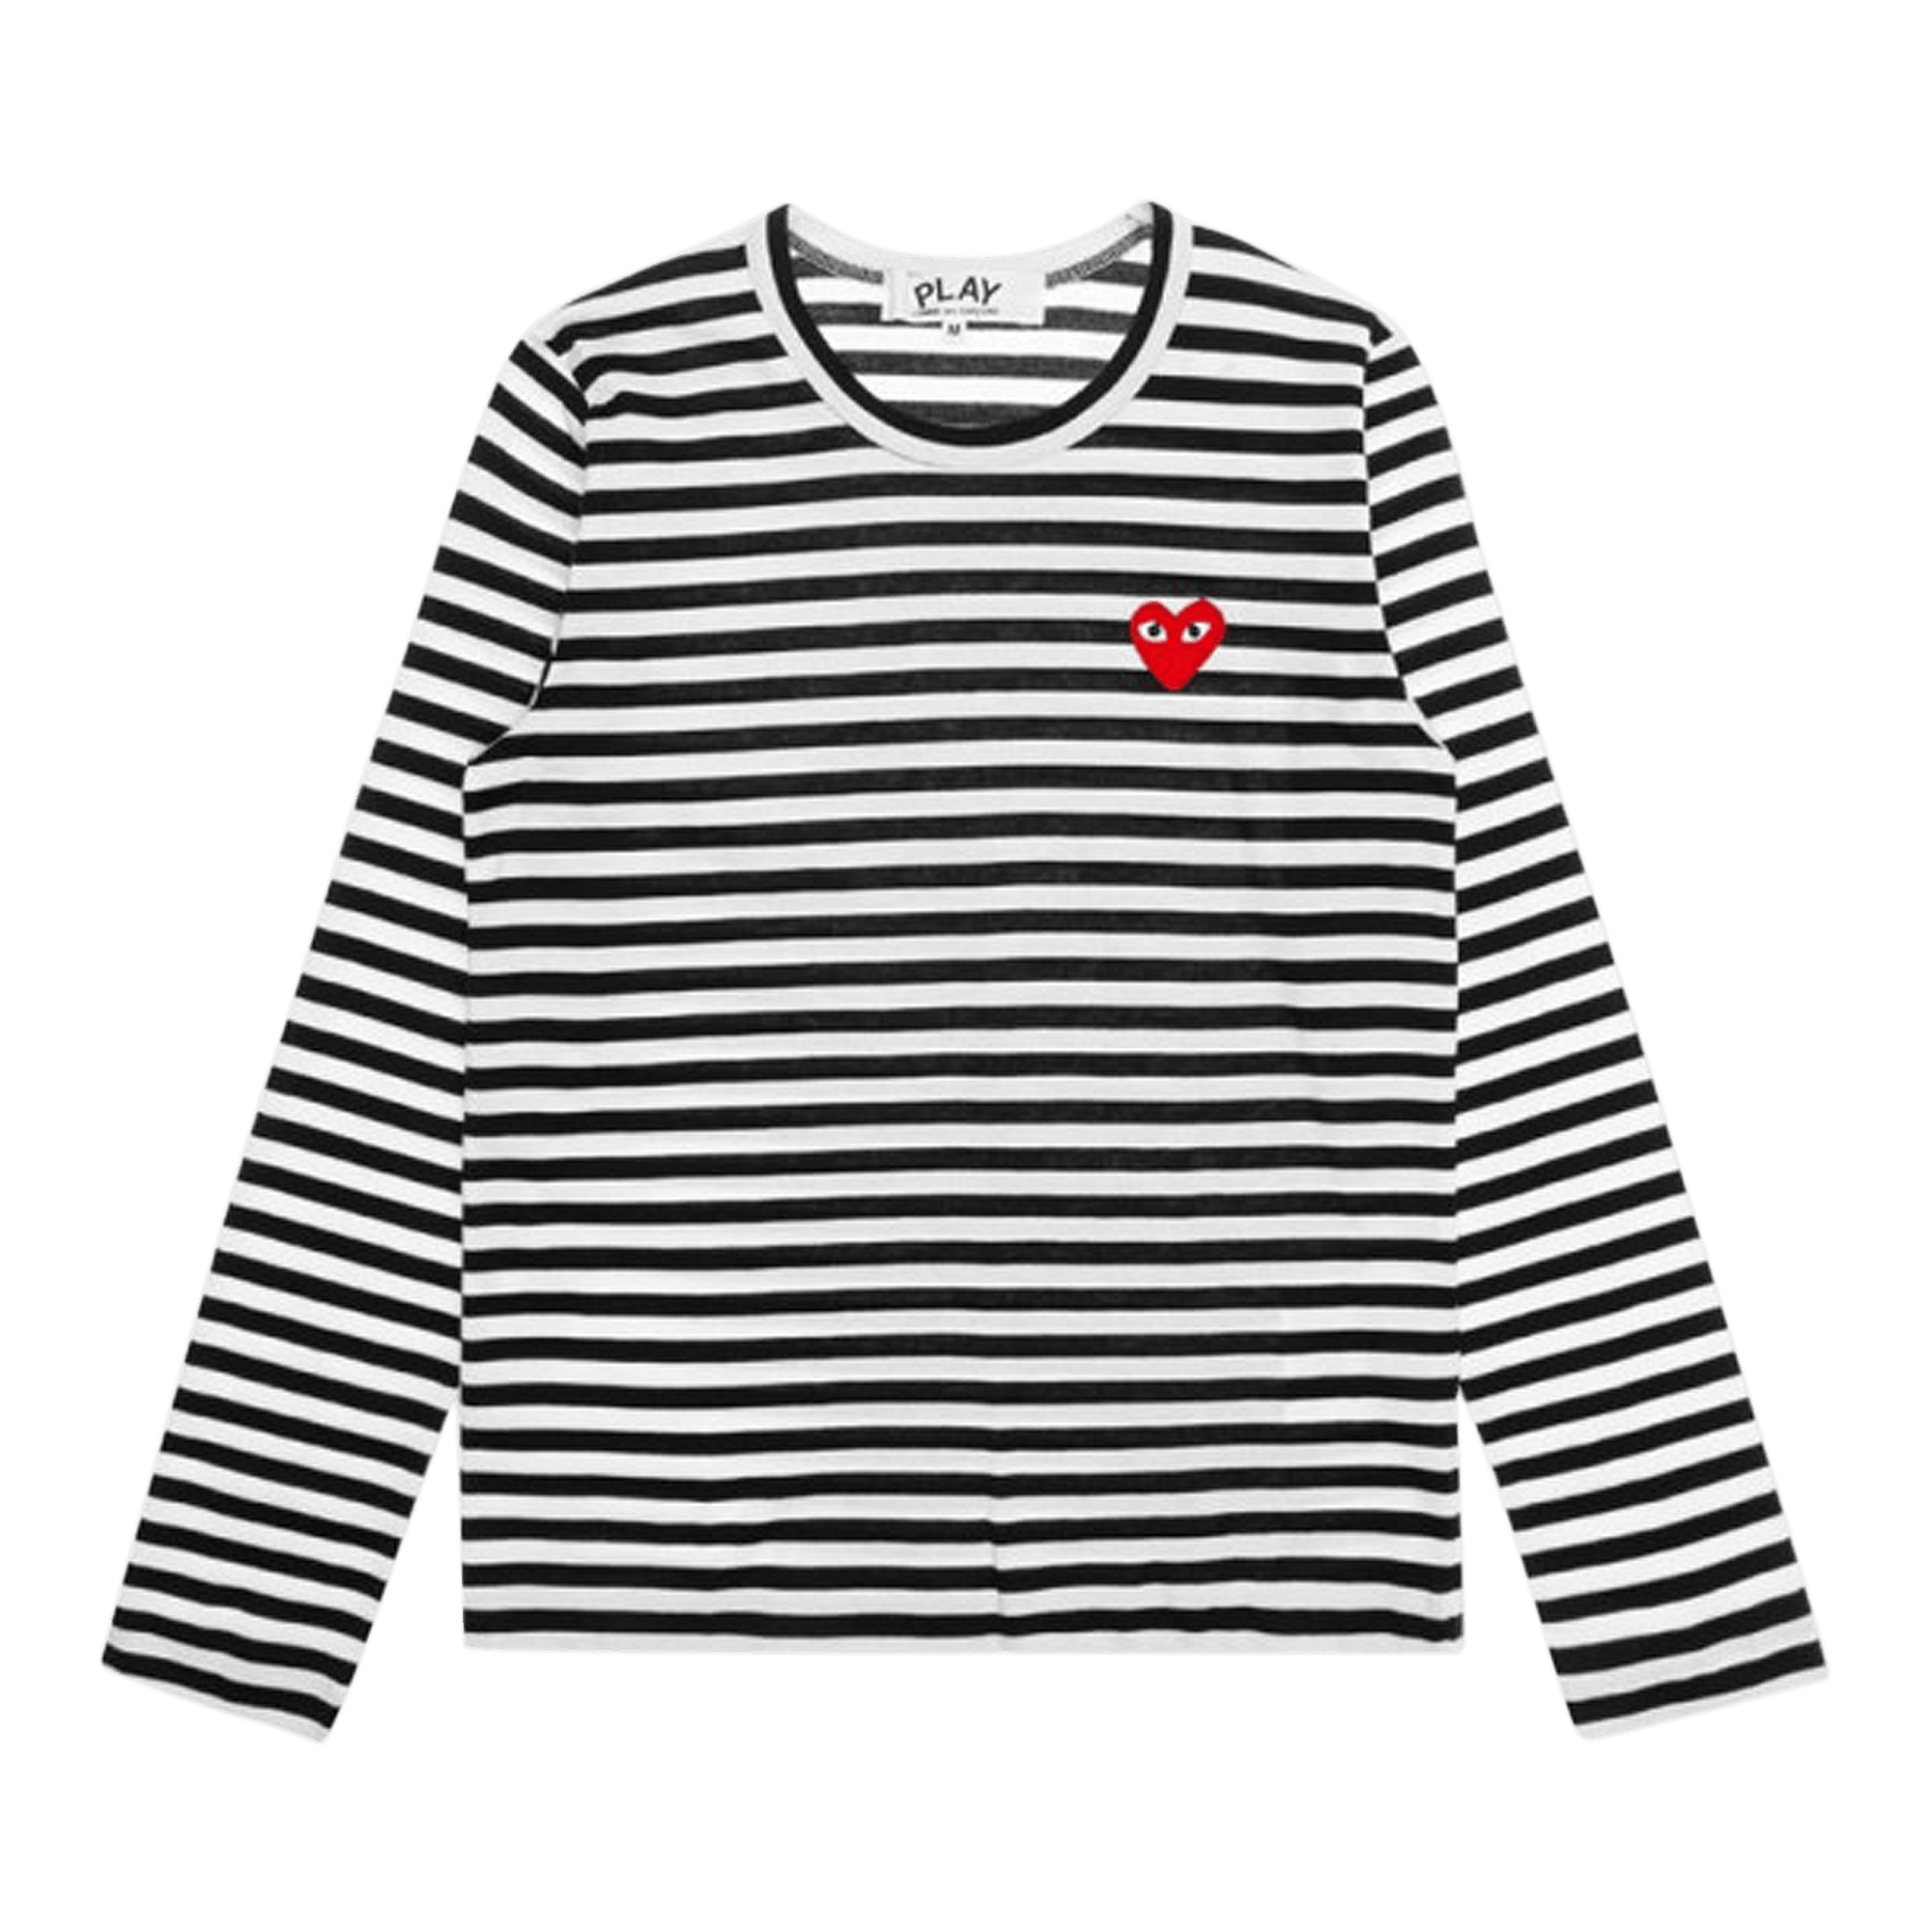 Comme Des Garçons Play T-Shirt Striped Red Heart 'Blk/Wht'